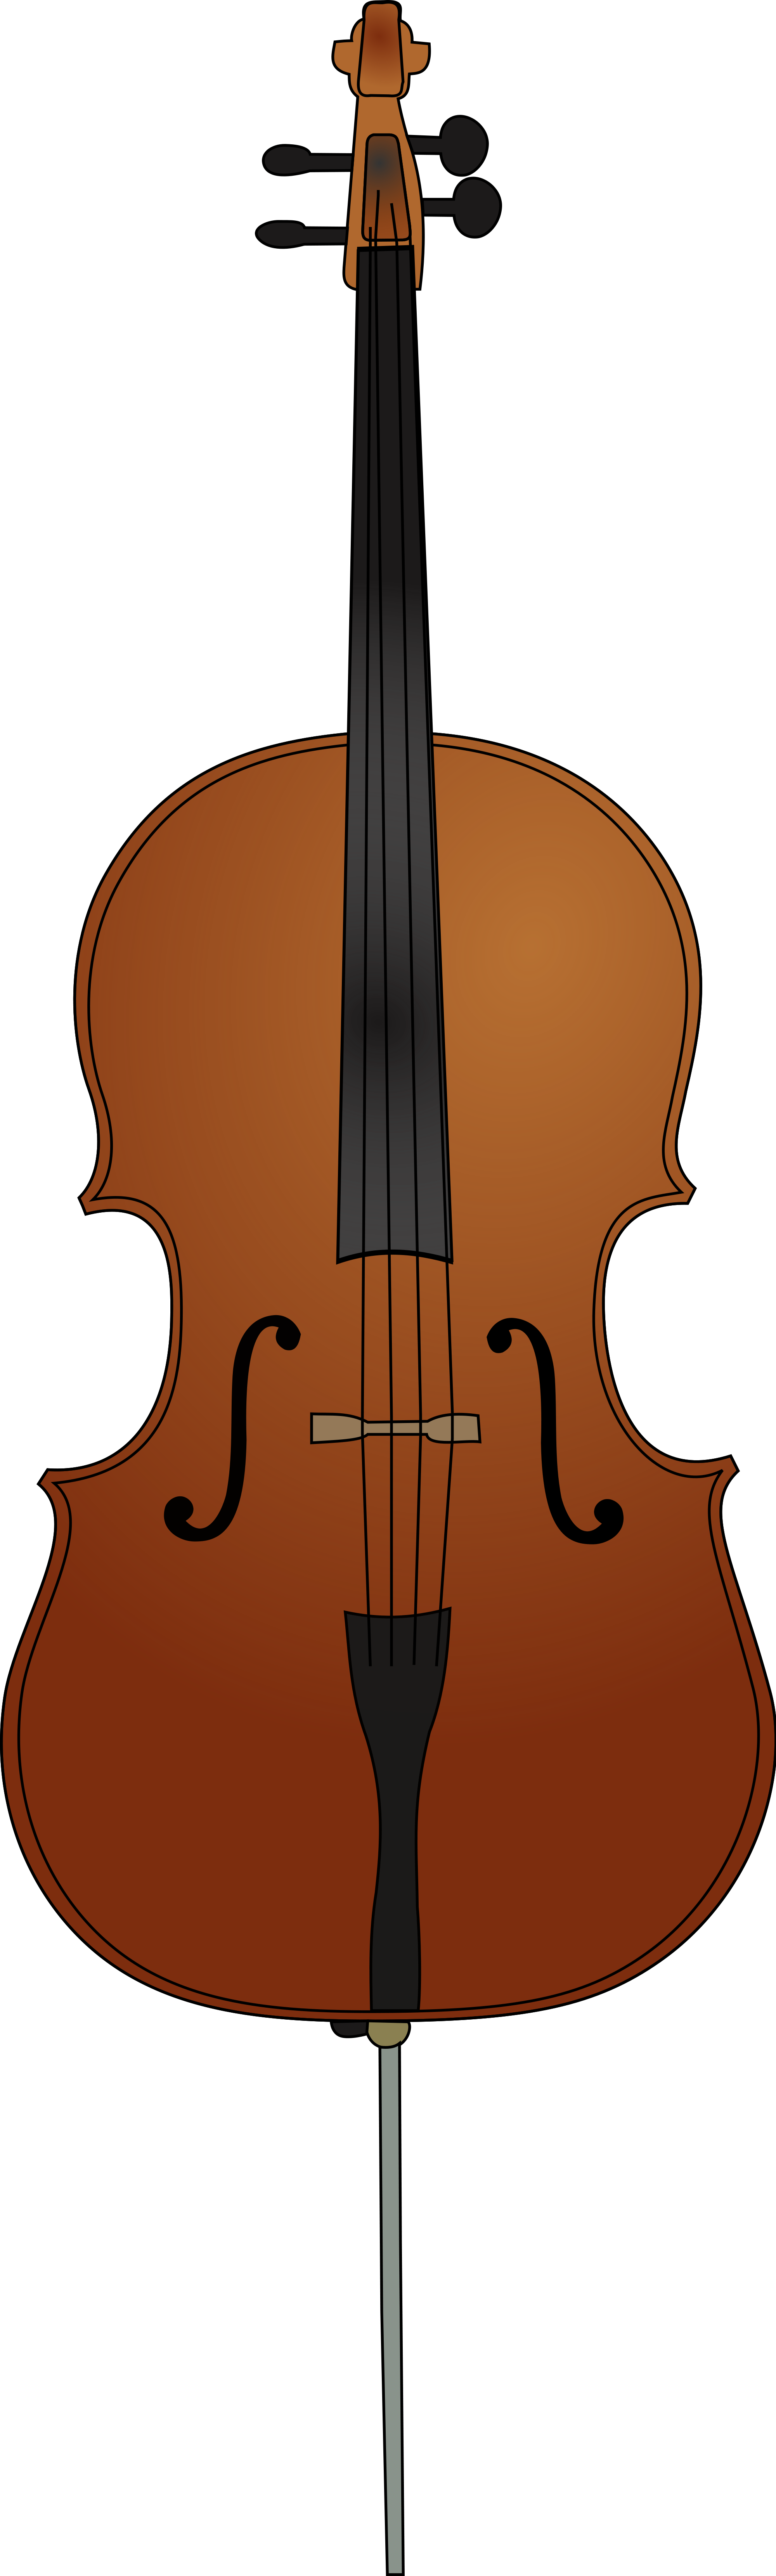 cello clipart svg